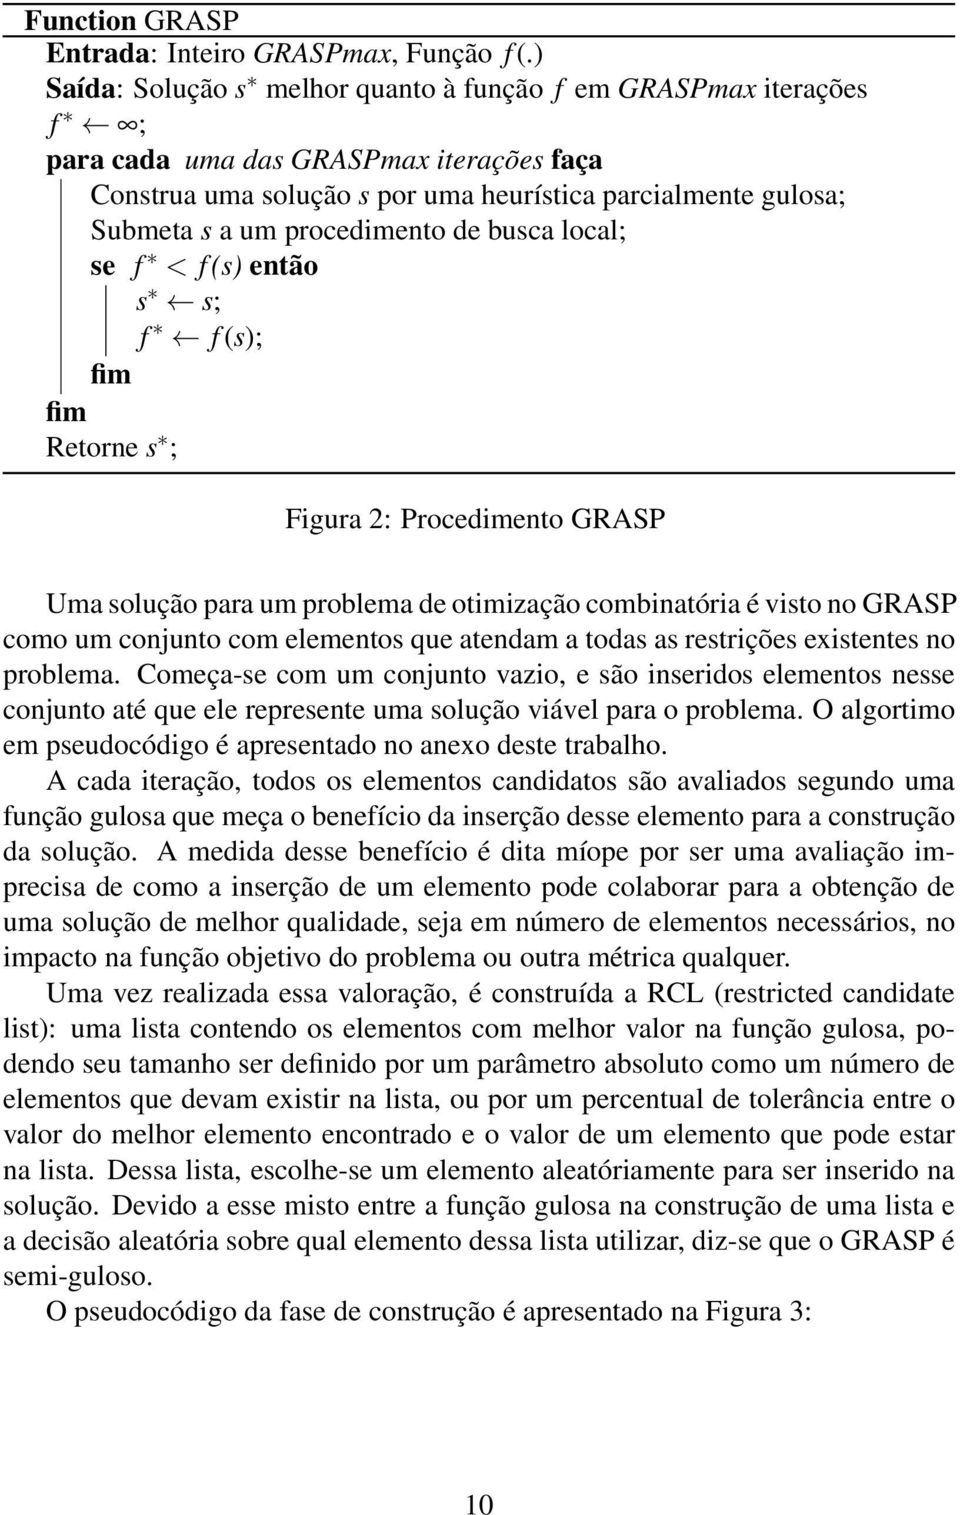 procedimento de busca local; se f < f (s) então s s; f f (s); fim fim Retorne s ; Figura 2: Procedimento GRASP Uma solução para um problema de otimização combinatória é visto no GRASP como um